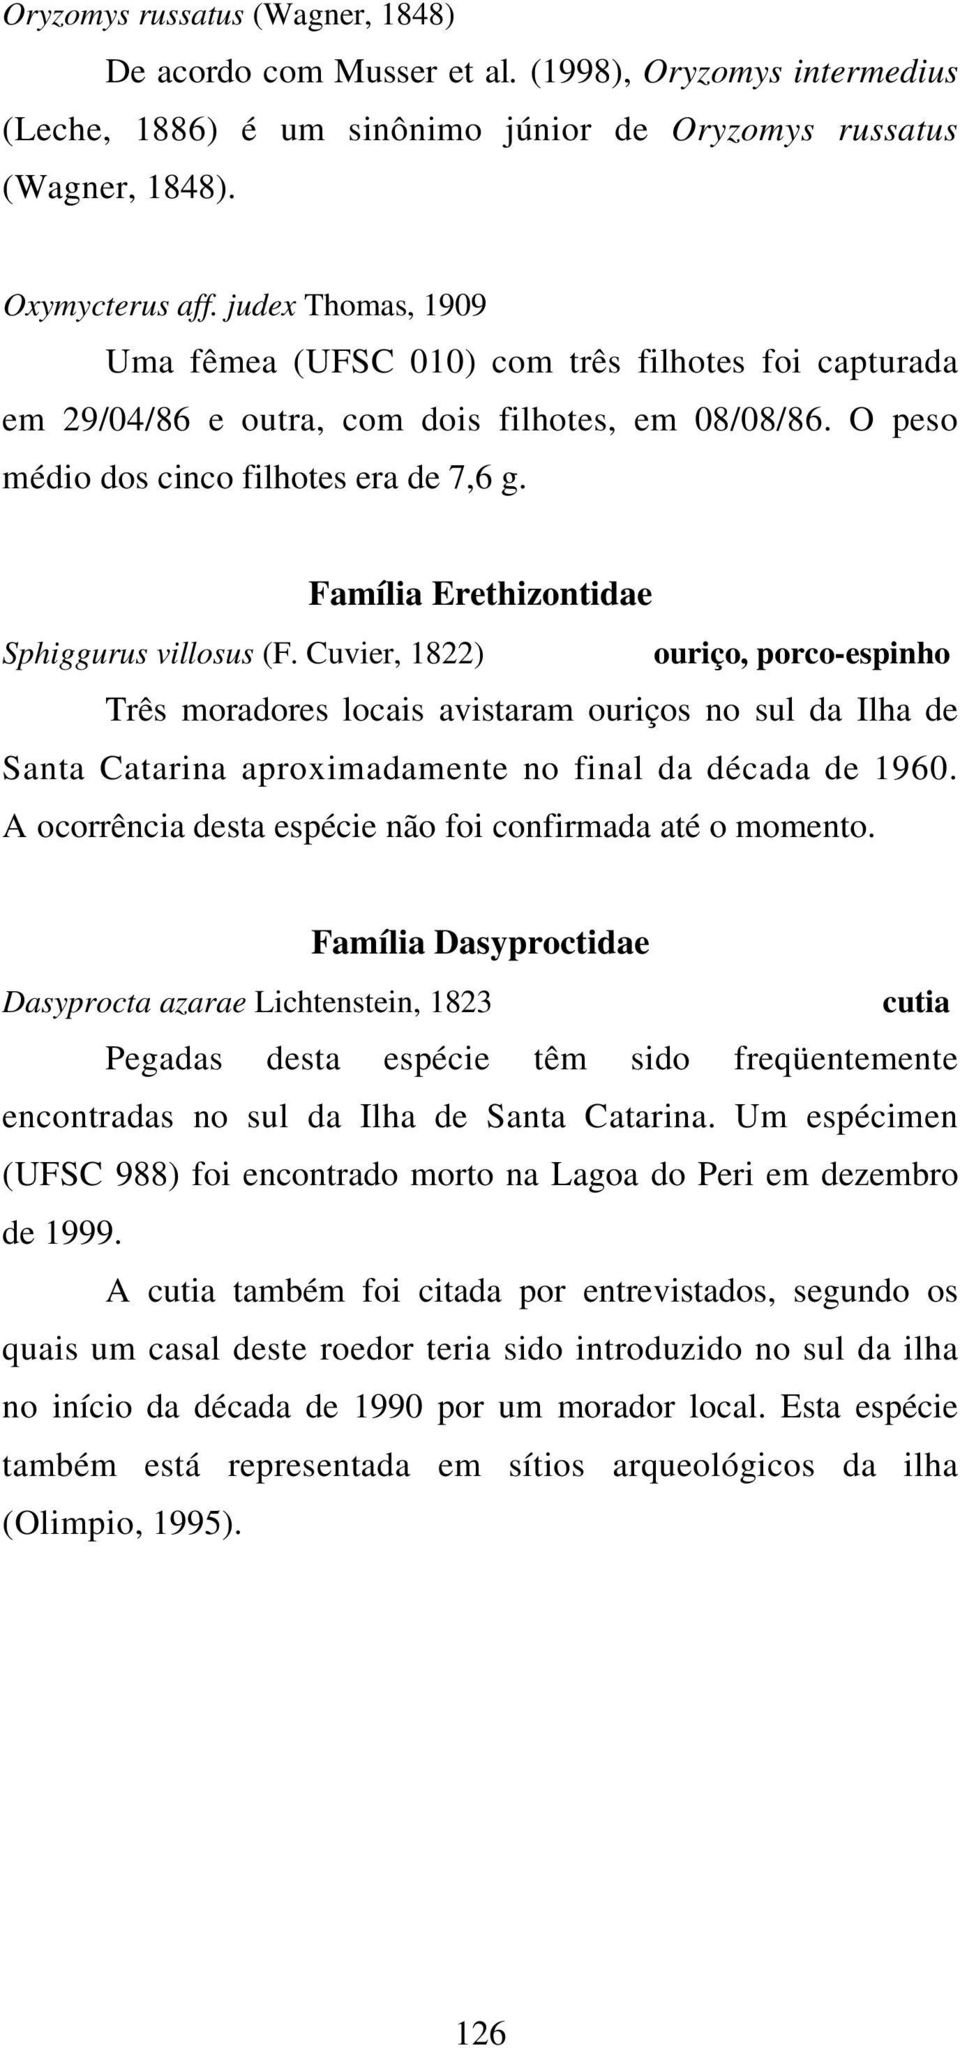 Família Erethizontidae Sphiggurus villosus (F. Cuvier, 1822) ouriço, porco-espinho Três moradores locais avistaram ouriços no sul da Ilha de Santa Catarina aproximadamente no final da década de 1960.